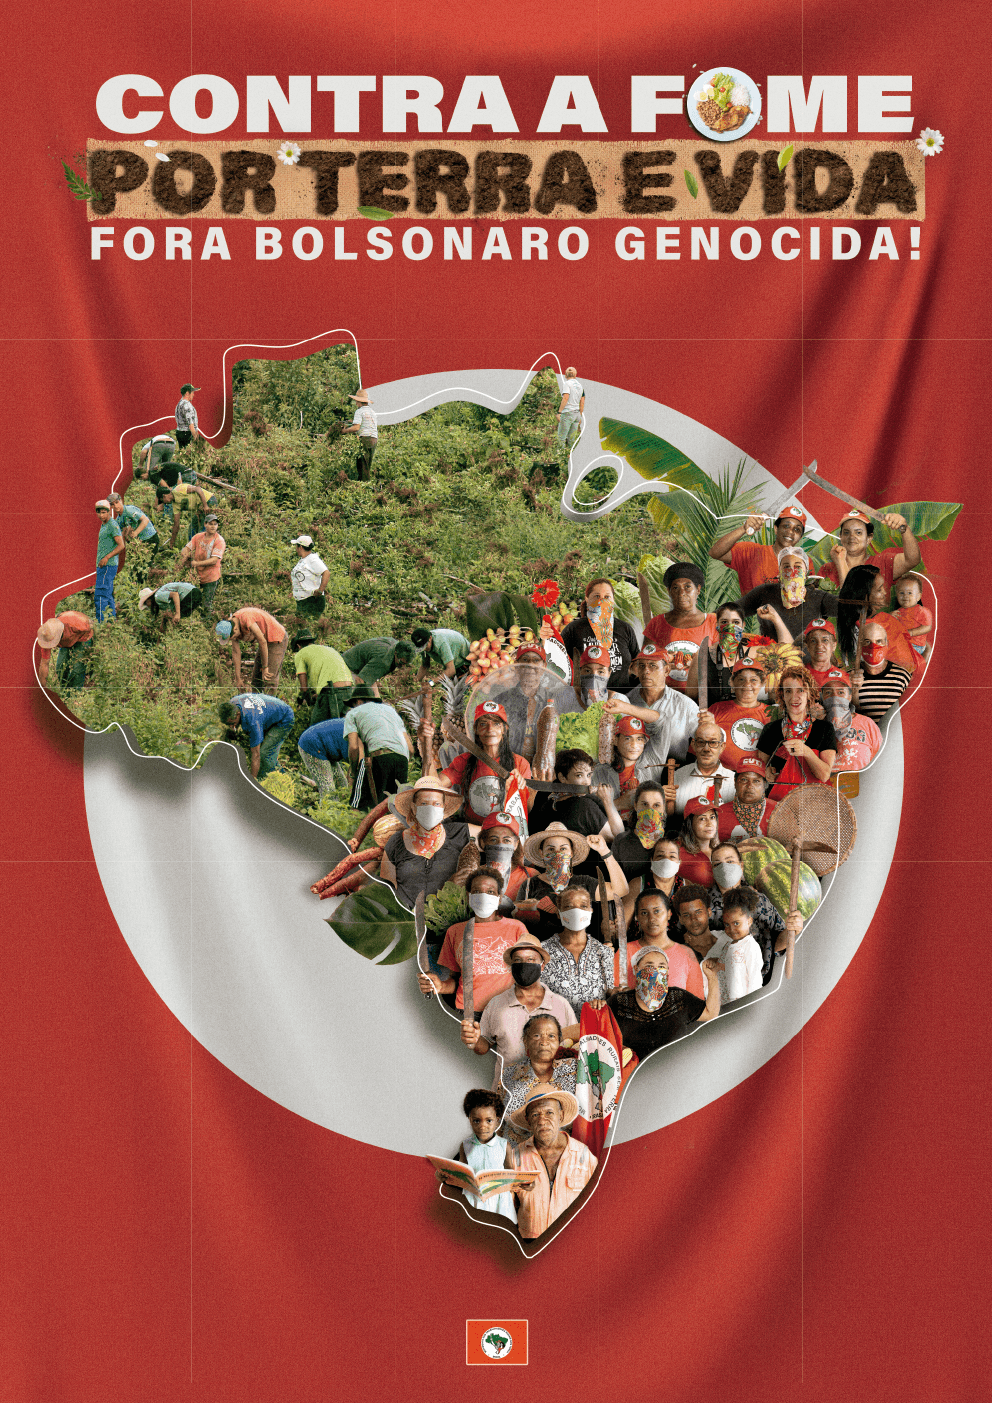 Contra A Fome Por Terra E Vida Fora Bolsonaro Genocida 2021 Mst 